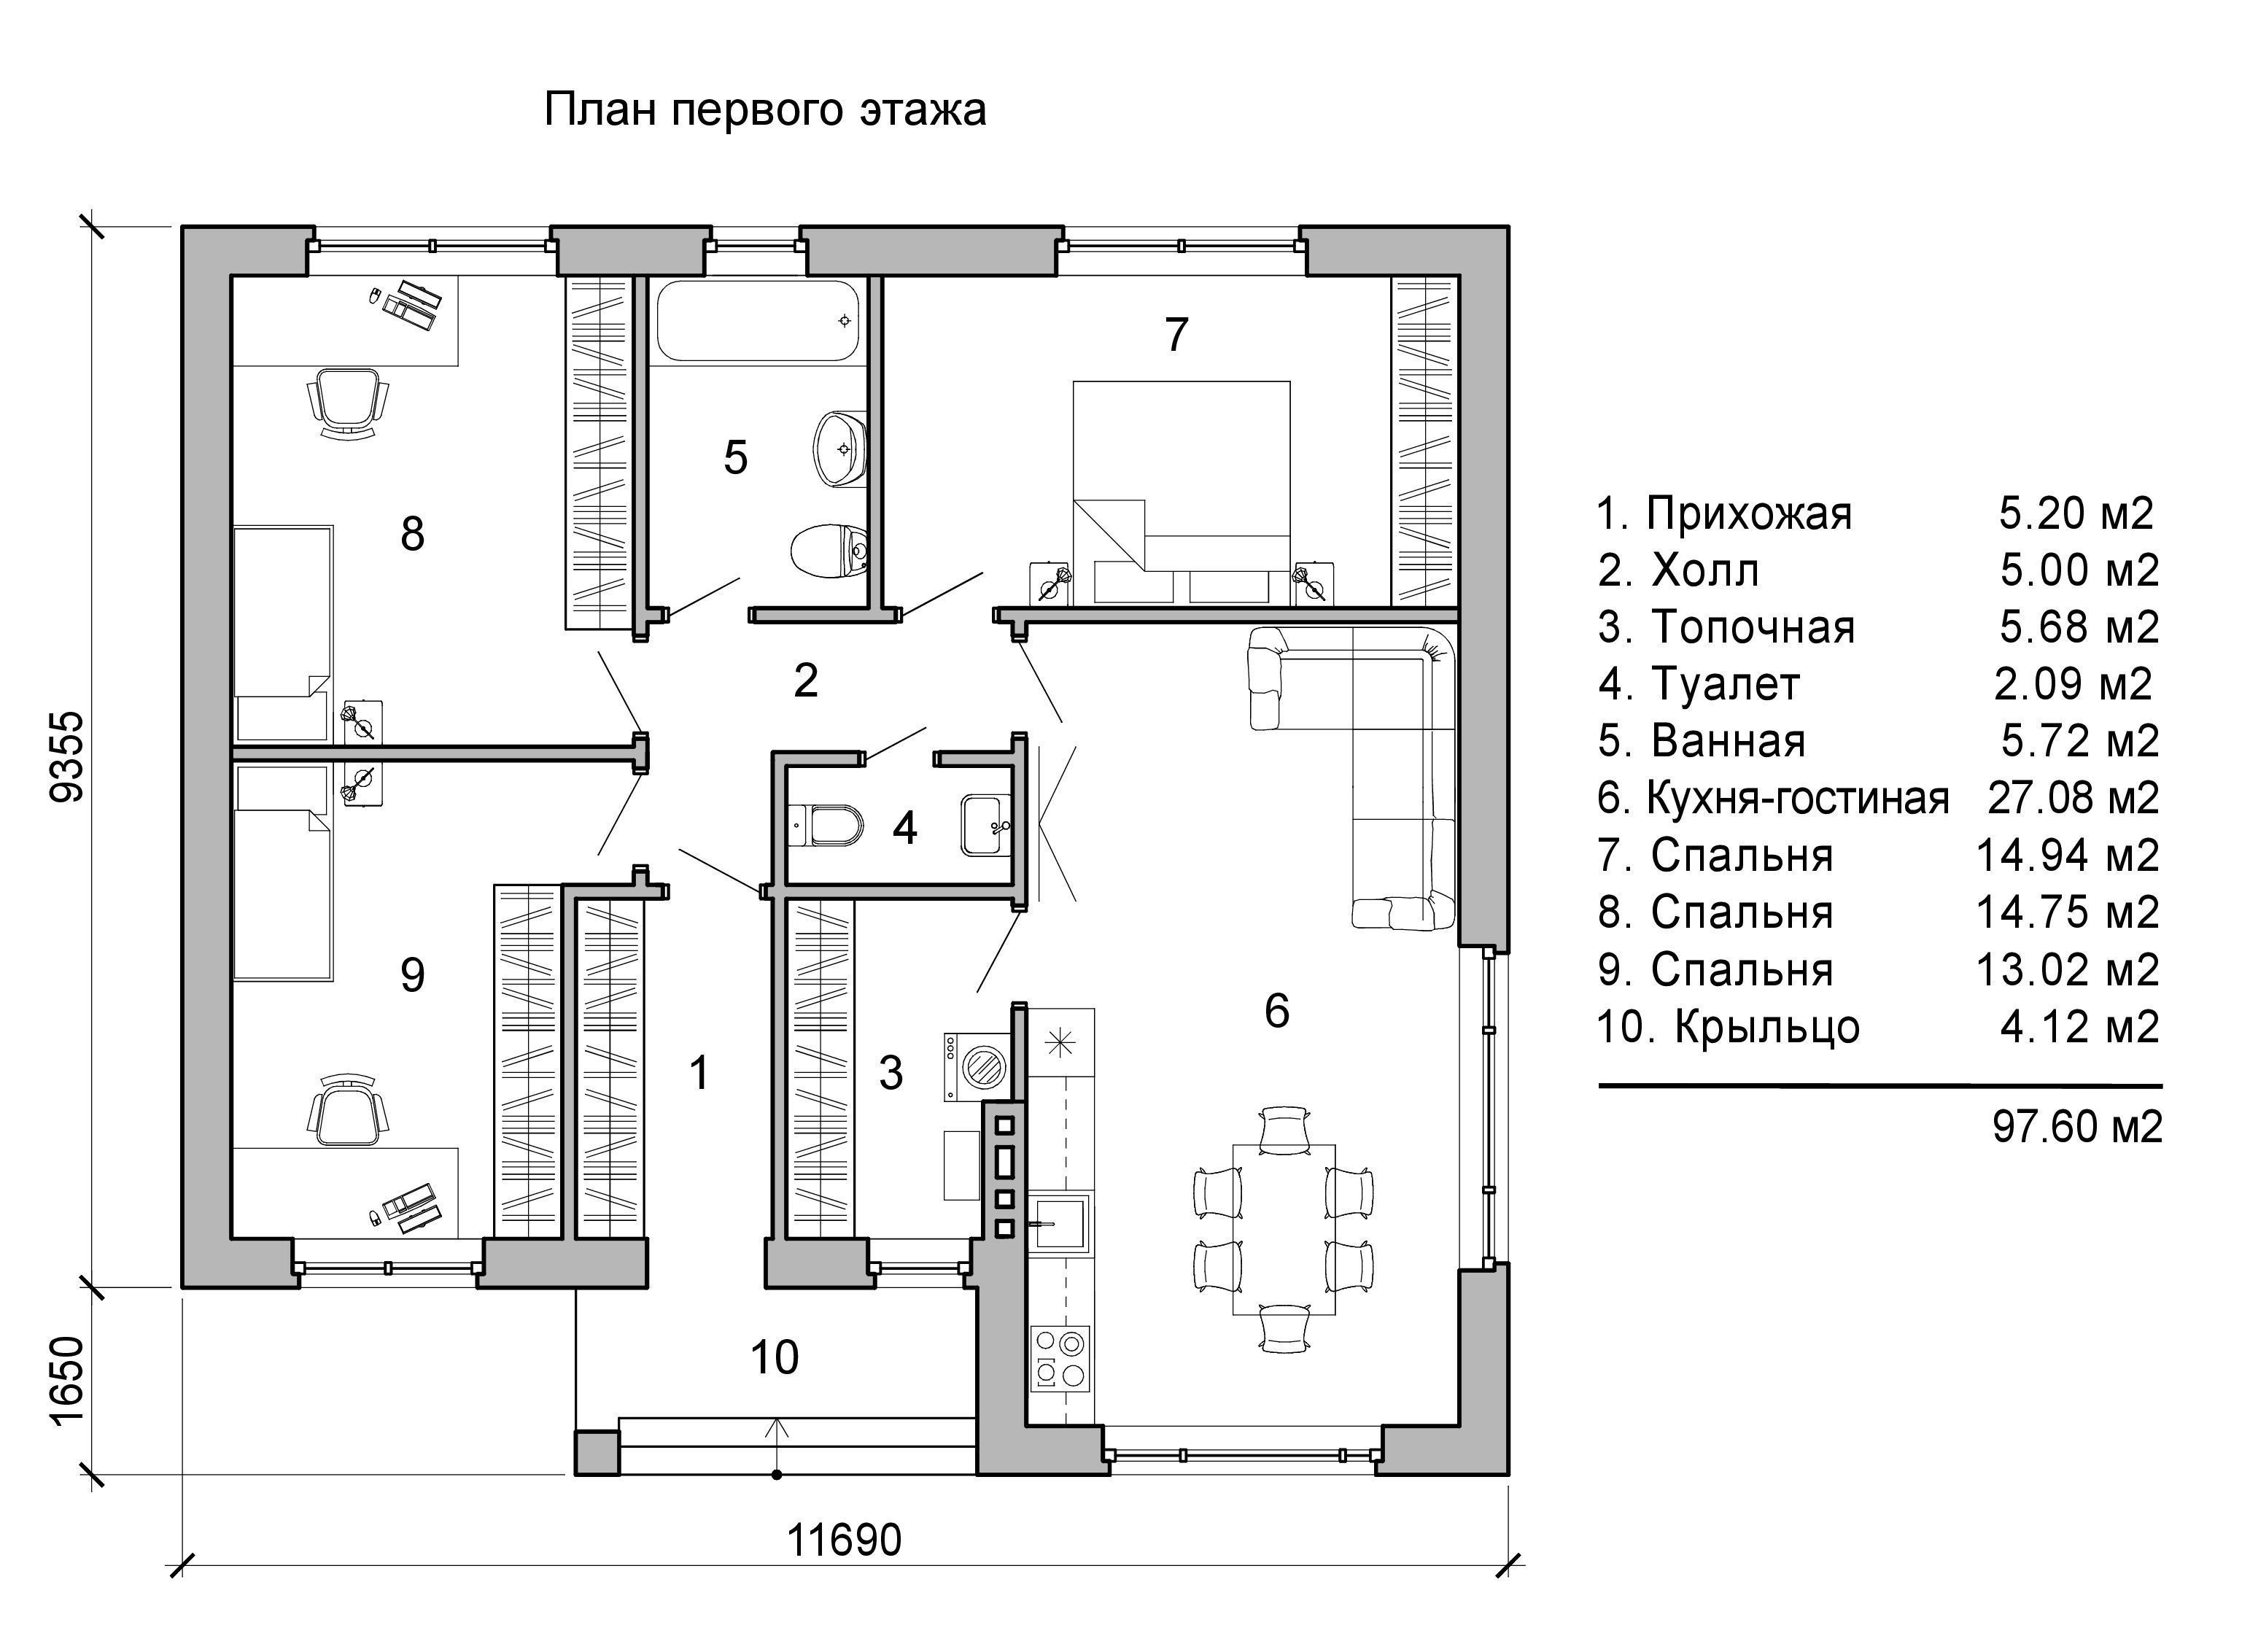 Одноэтажные дома plans_Plan_pervogo_etazha_Variant_1.jpg